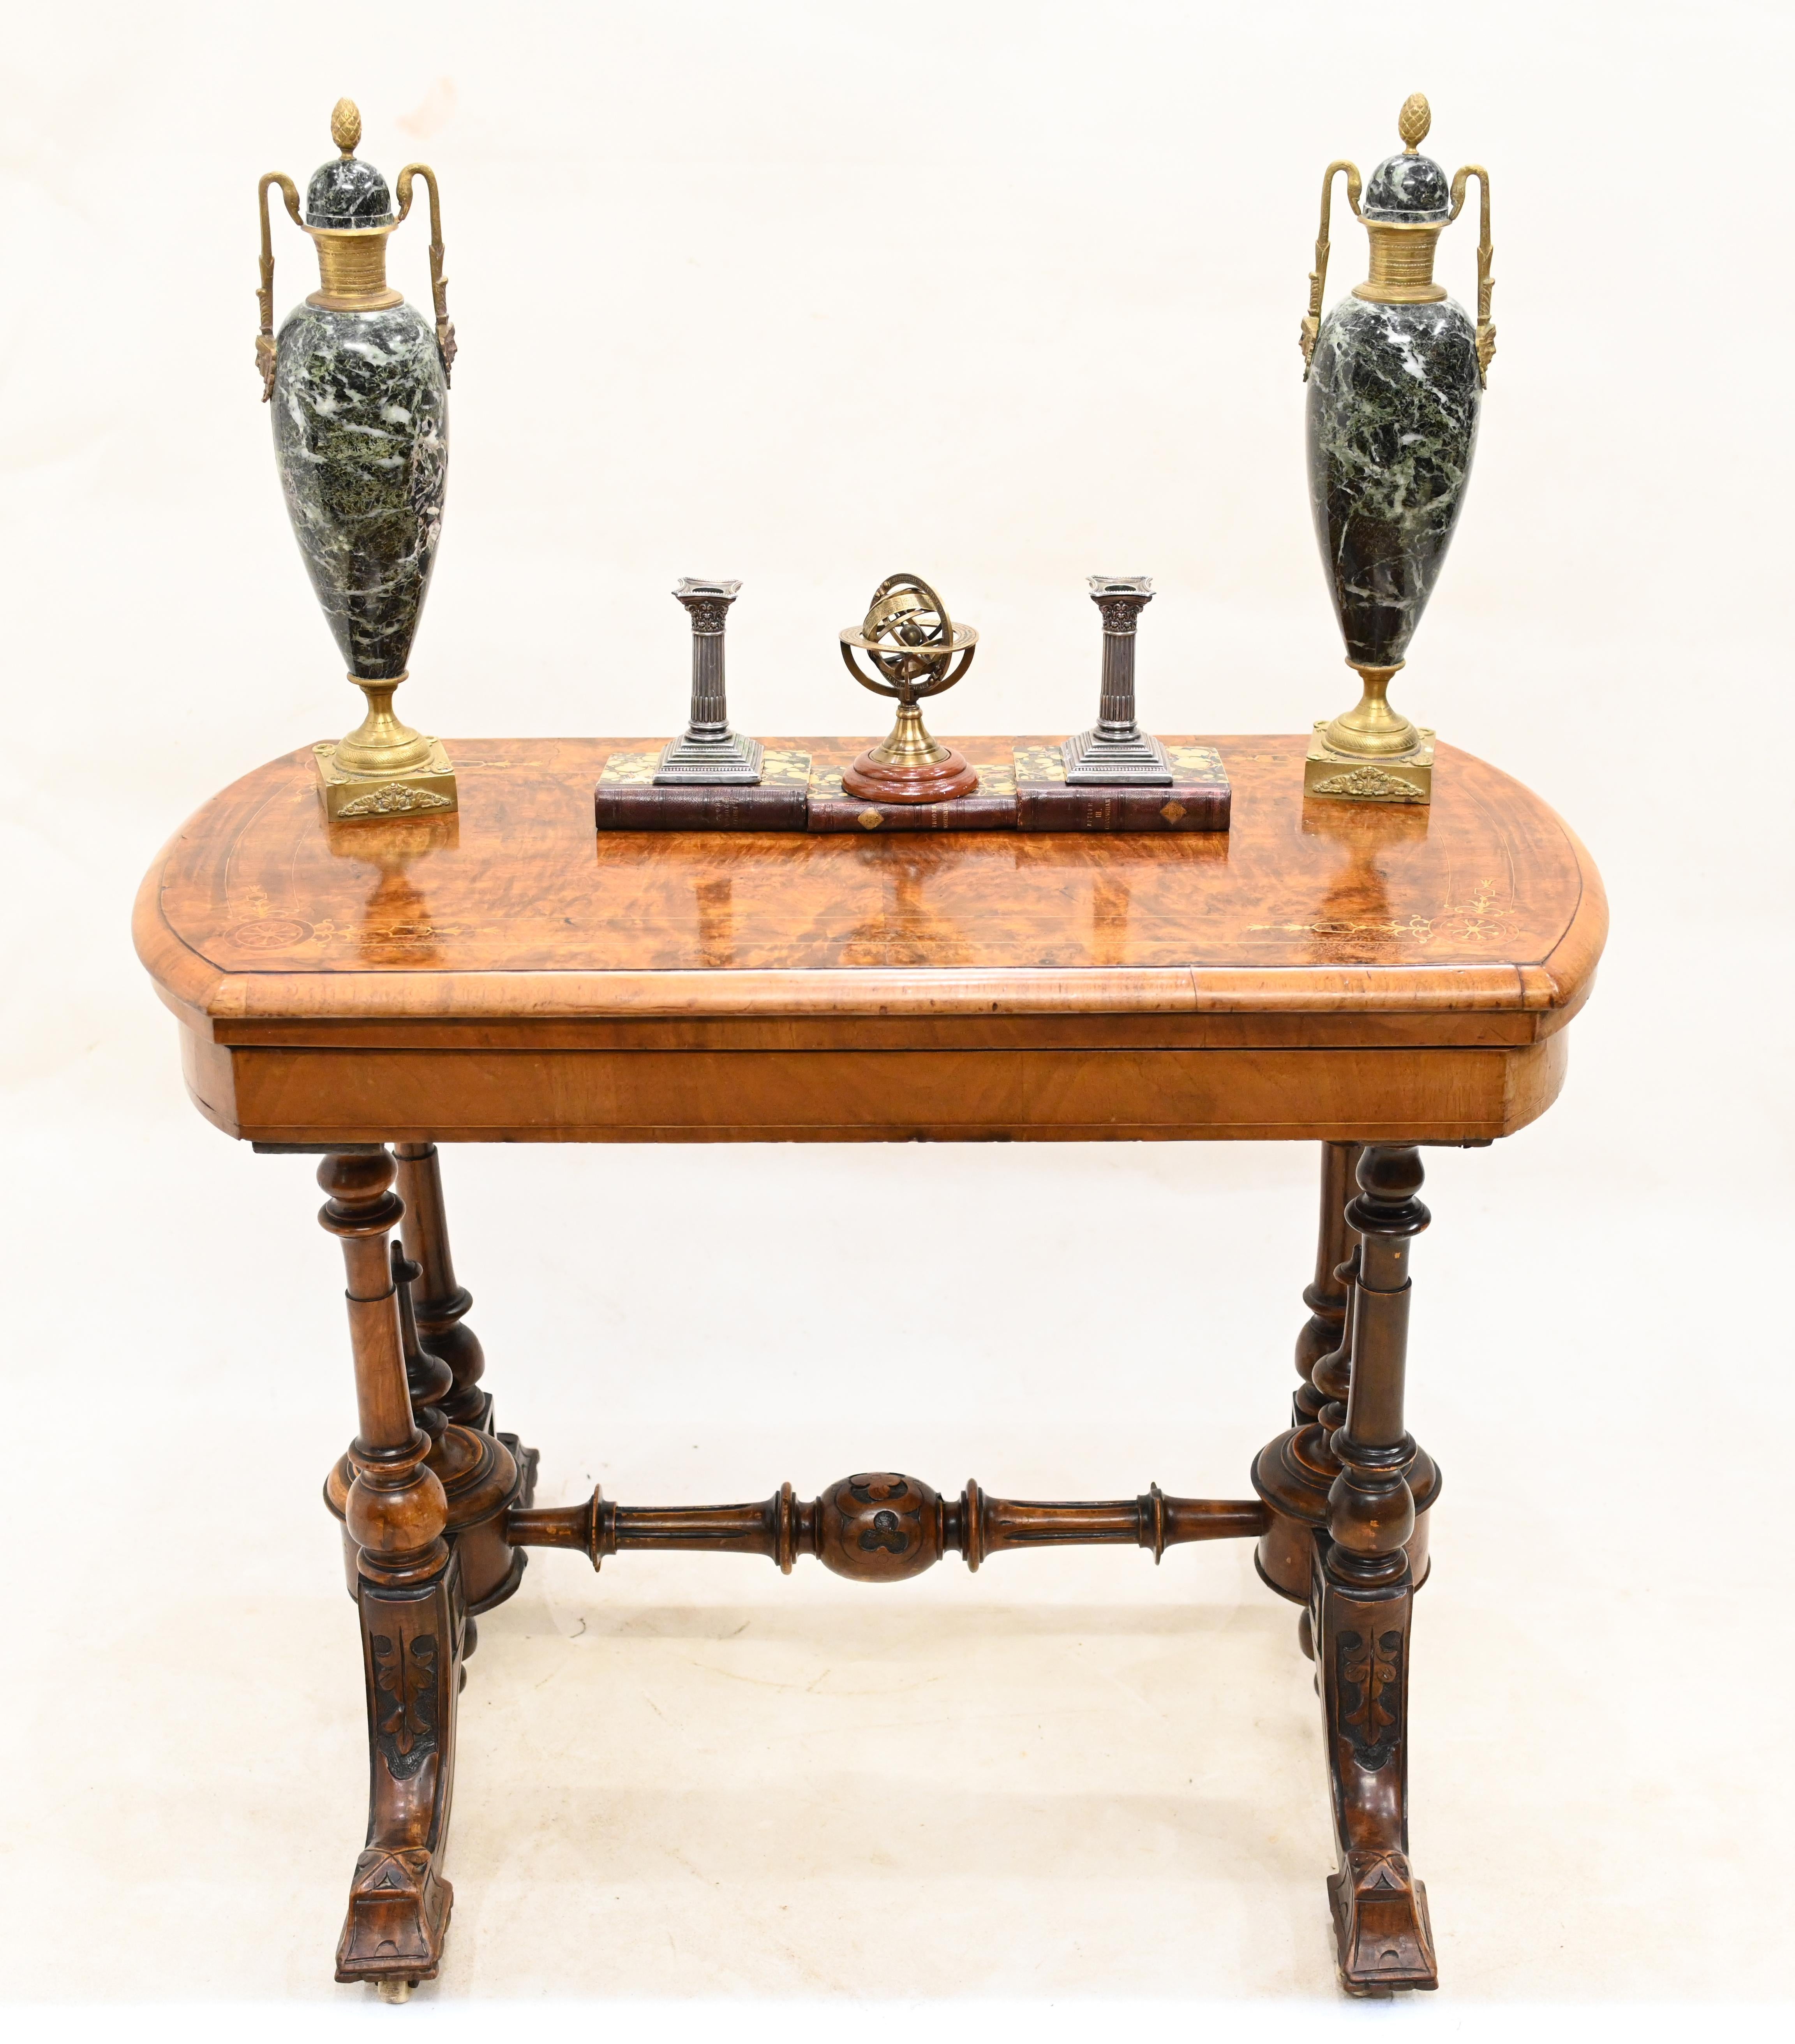 Schöner viktorianischer Spiel- oder Kartentisch aus Wurzelholz
CIRCA 1880 auf diesem antiken Sammlerstück
Mit einem umklappbaren Oberteil, das sich öffnet und die mit Beize gefütterte Spielfläche zum Vorschein bringt
Gekauft aus einem Privathaus im